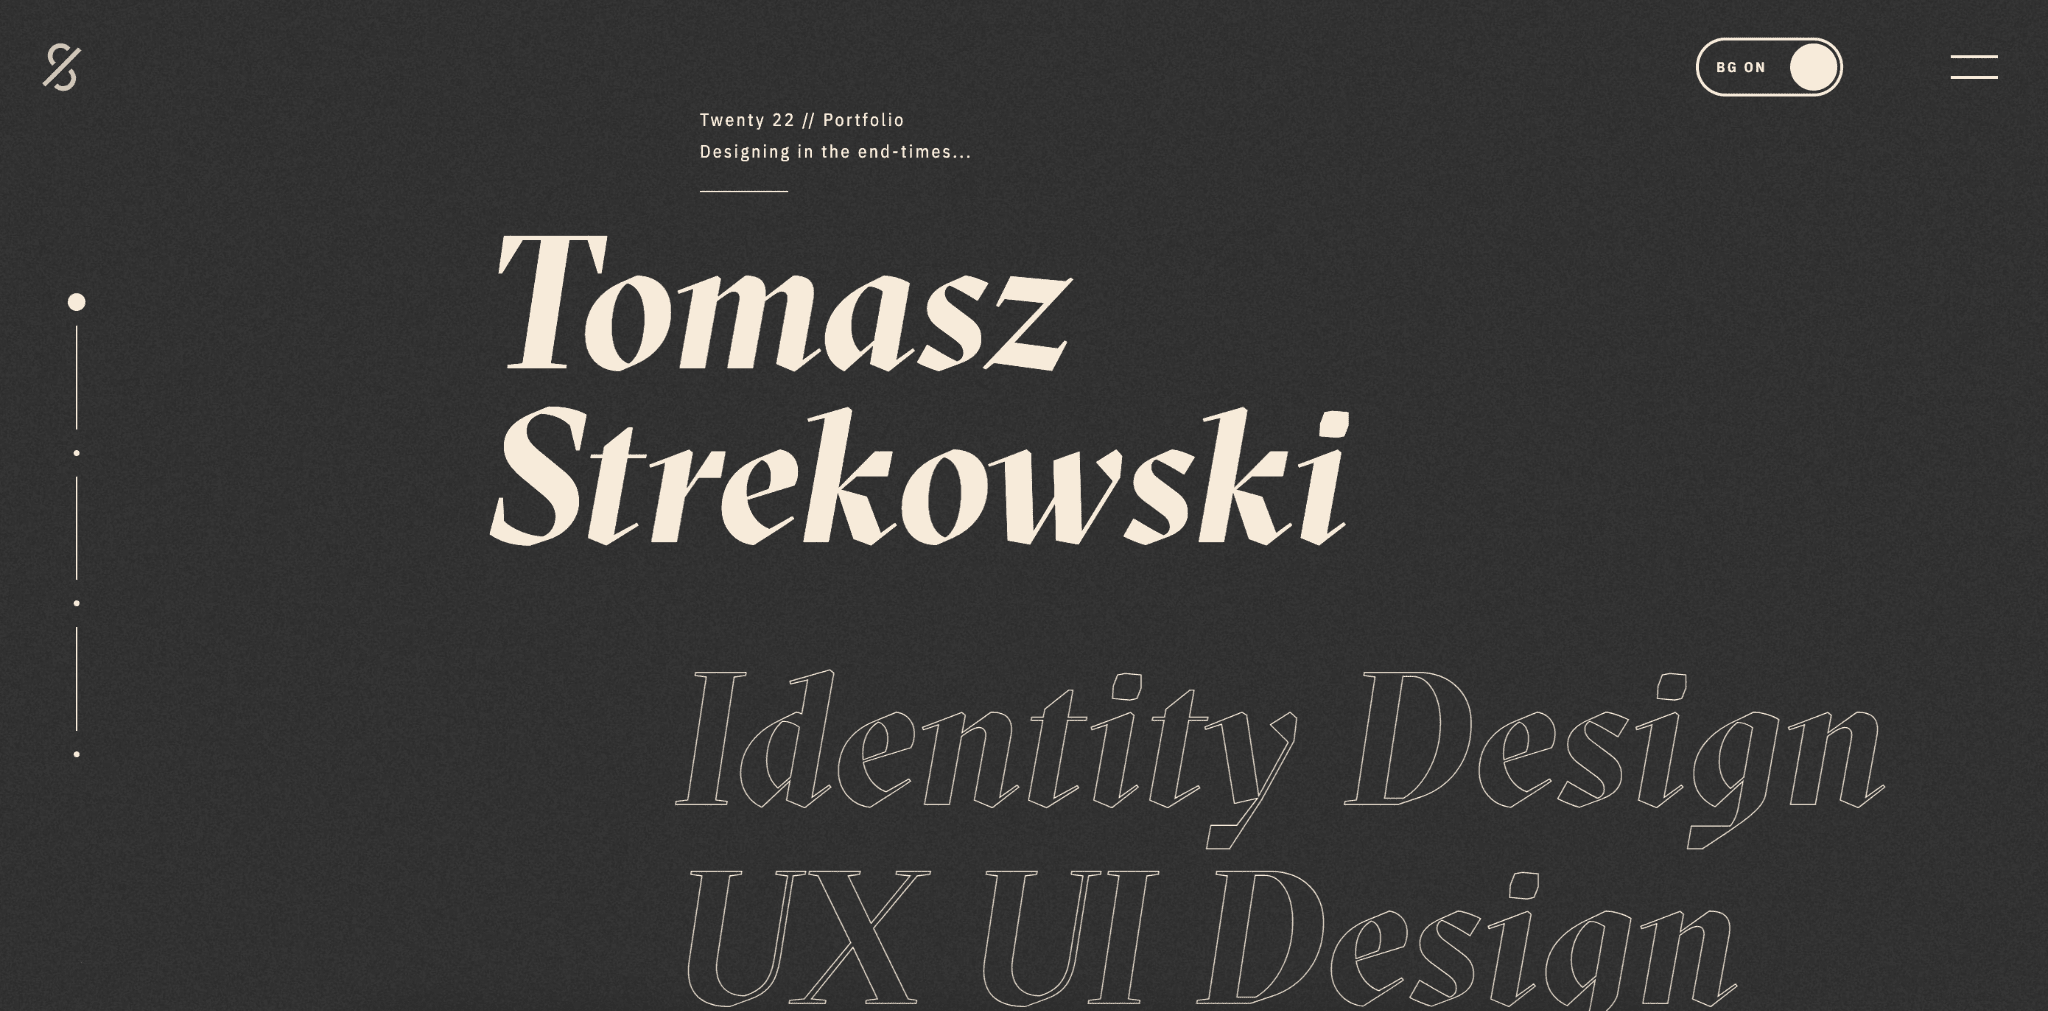 portfolio webflow Tomasz Strekowski